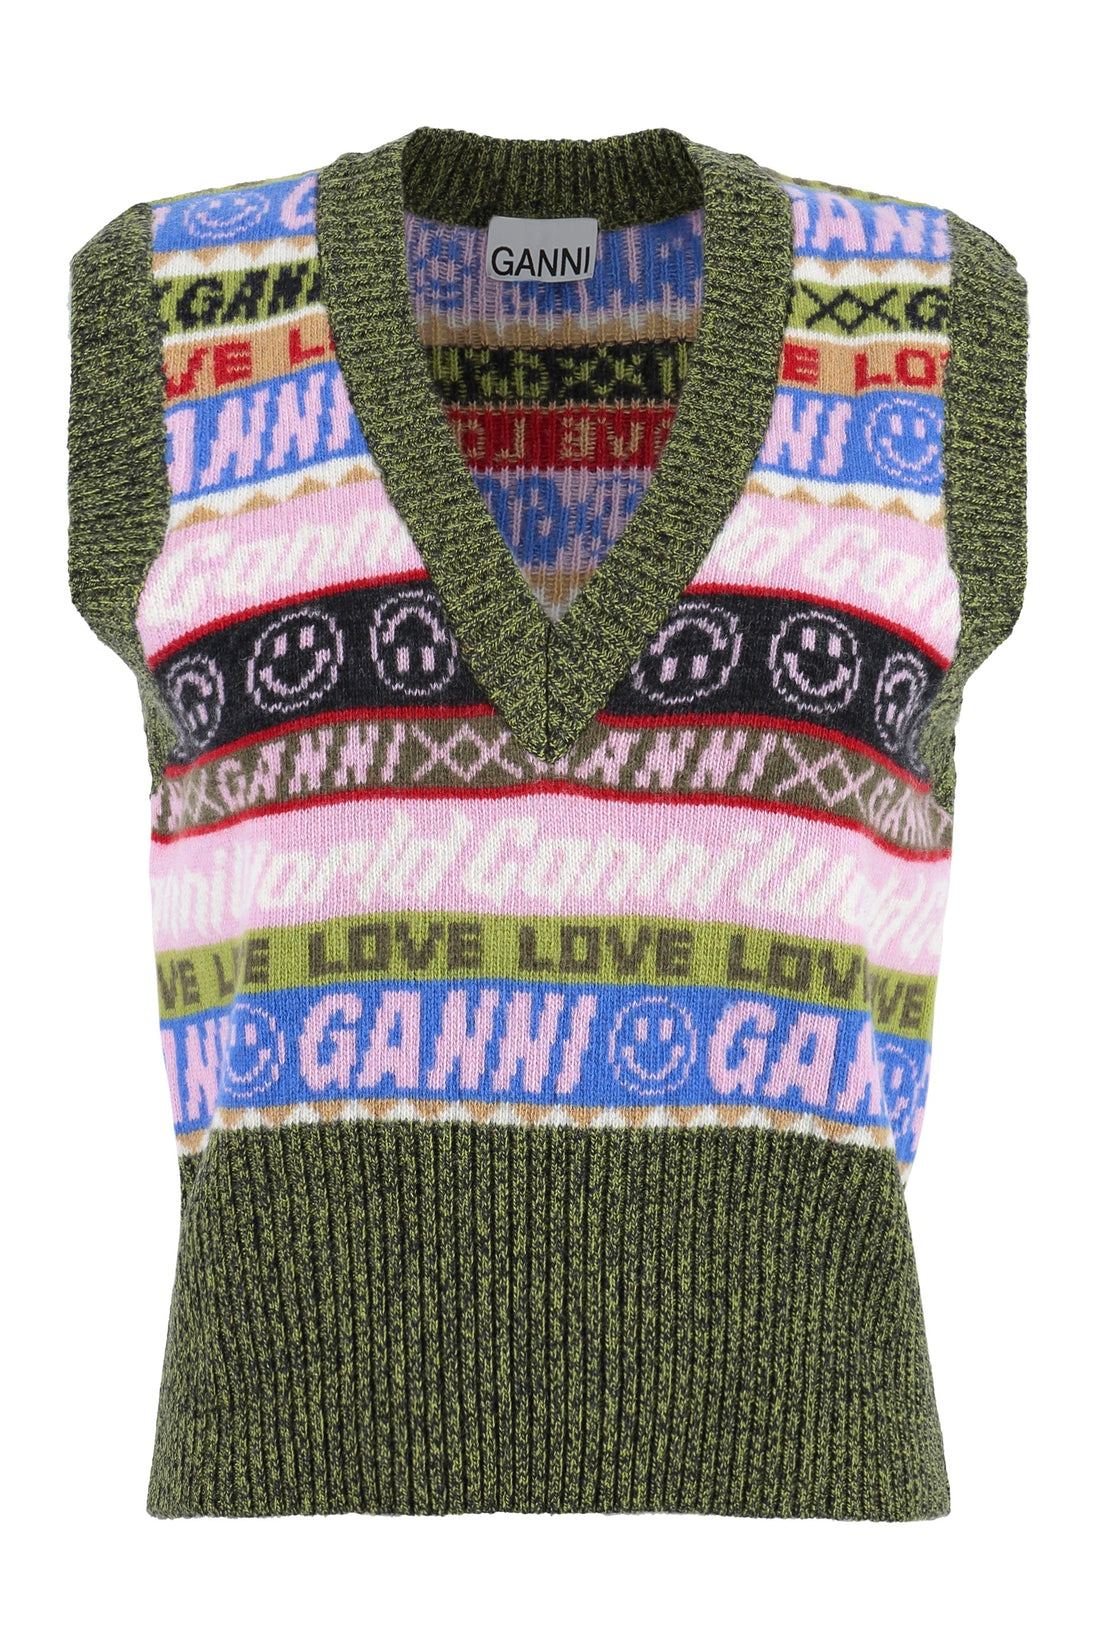 GANNI-OUTLET-SALE-Knitted V-neck vest-ARCHIVIST